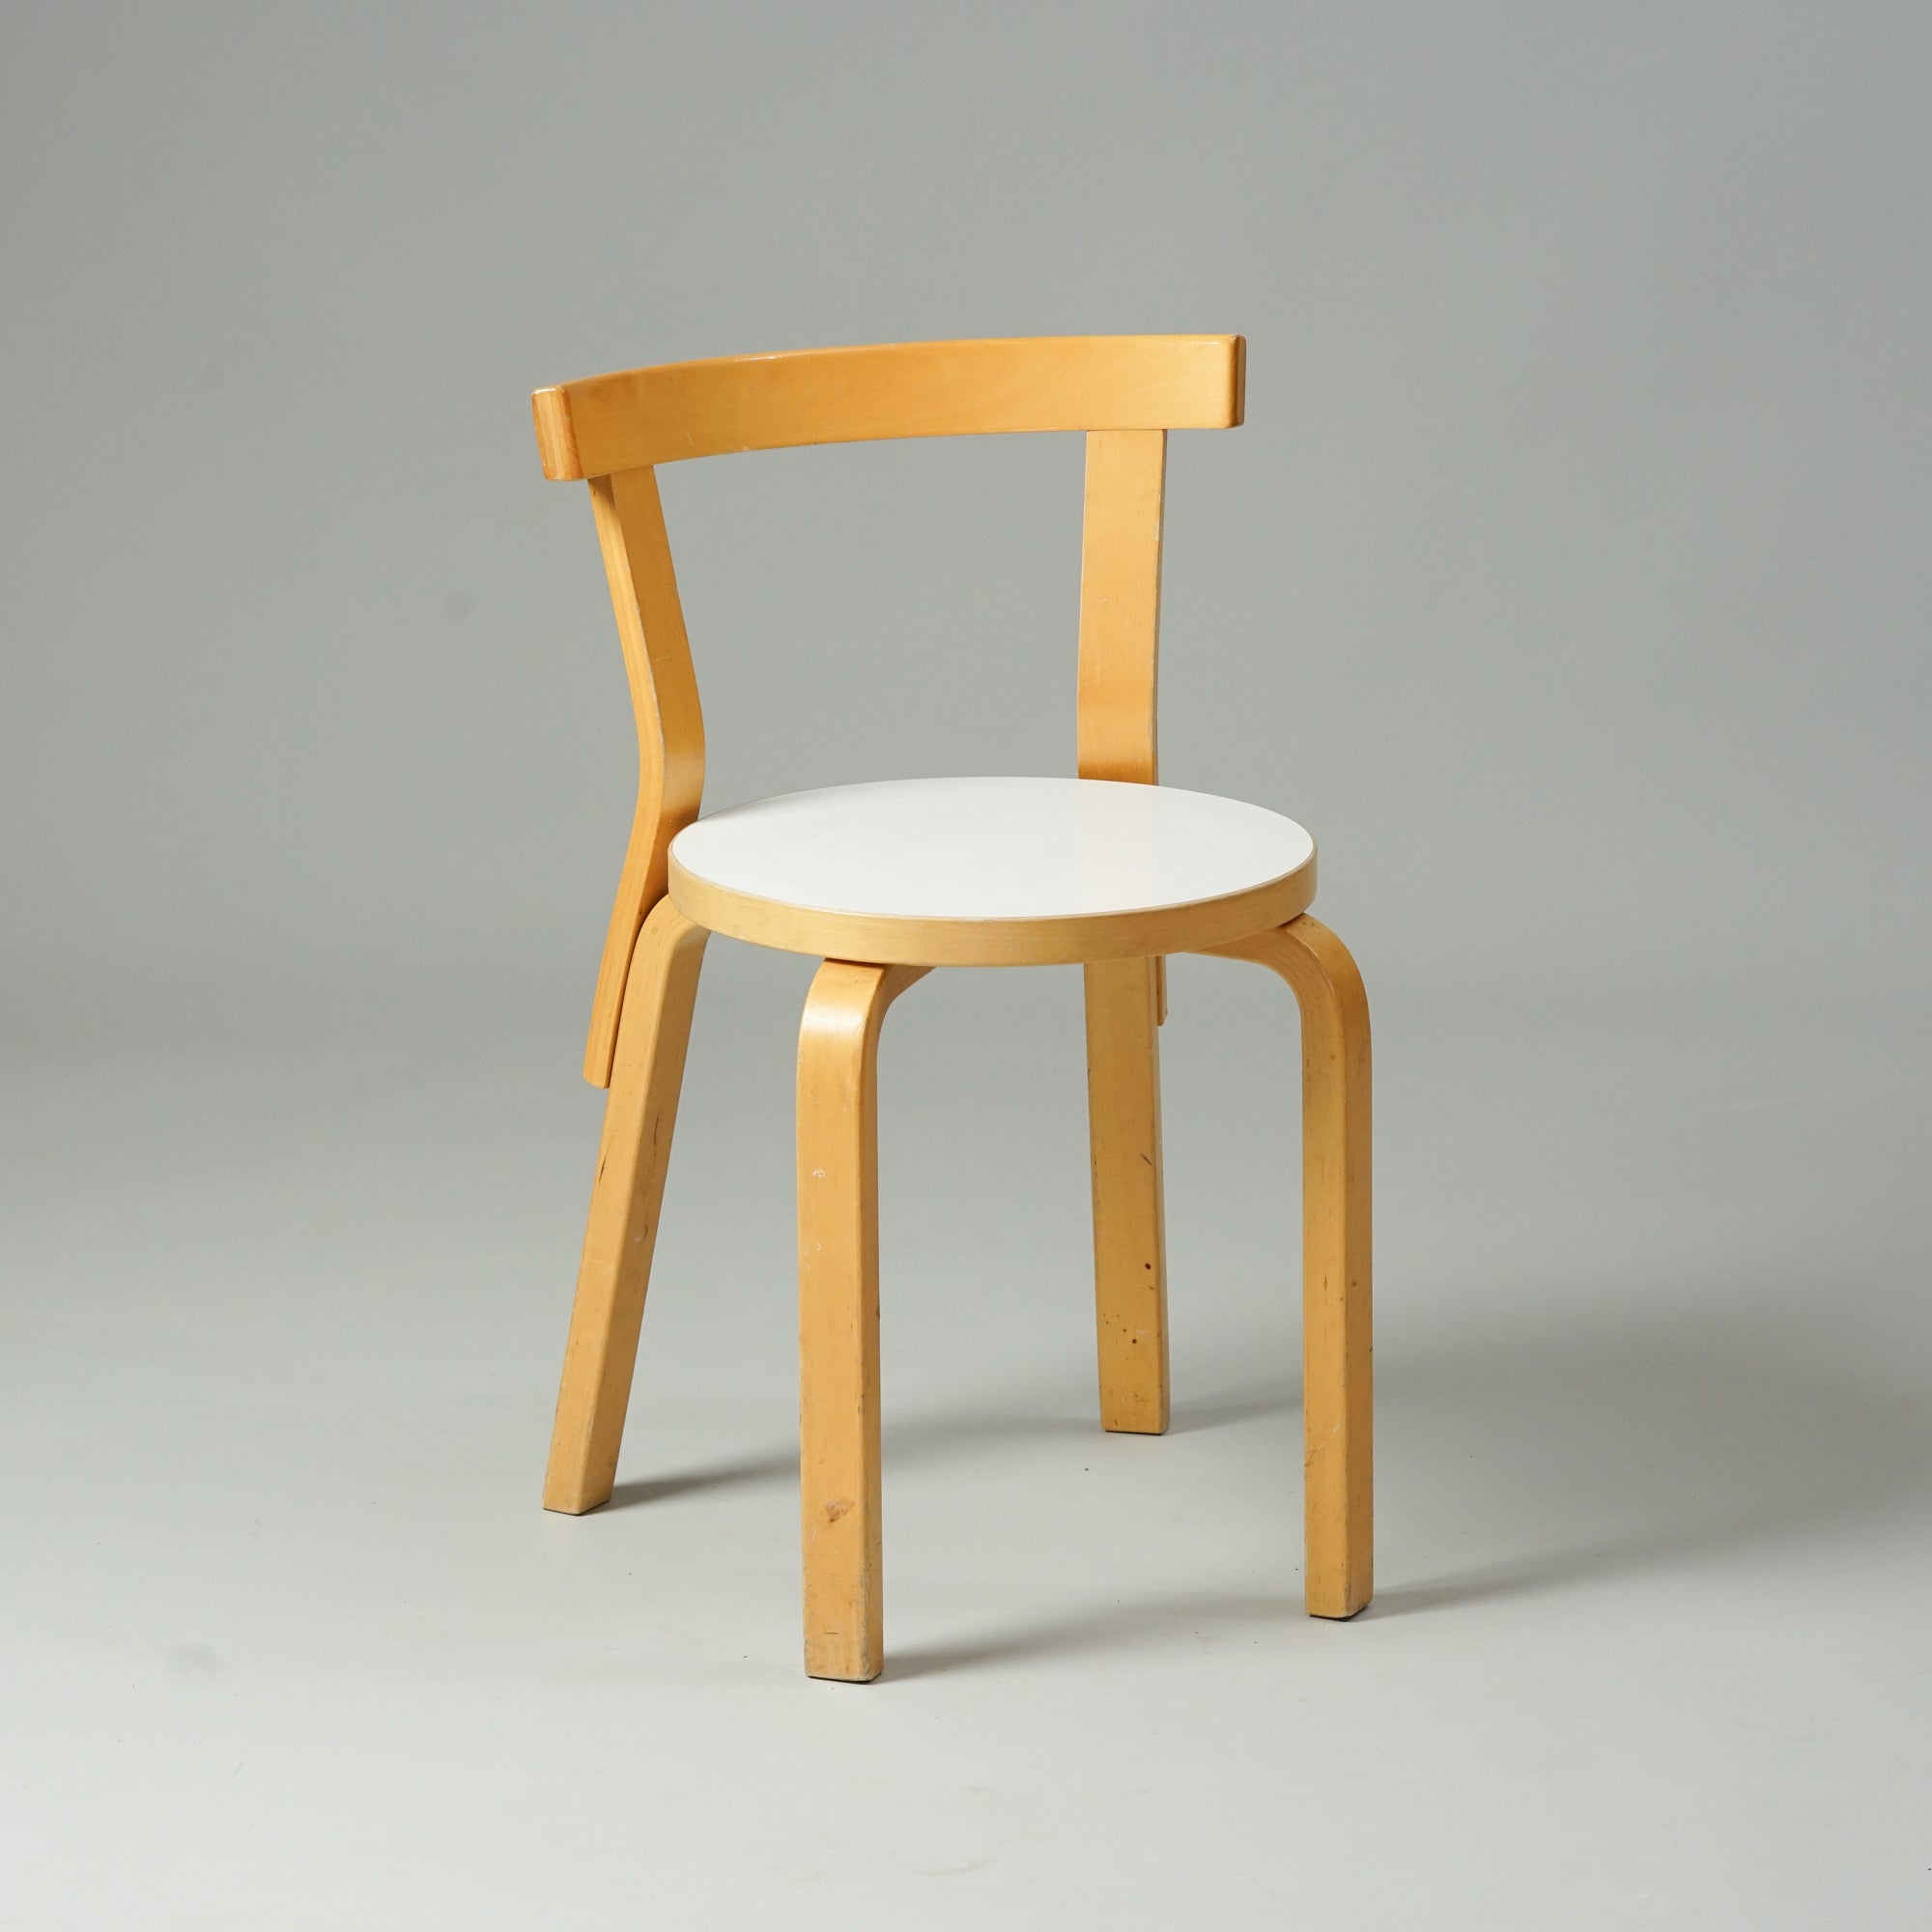 Koivusta tehty tuoli, jossa pyöreä istuin valkoisella linoleum päällisellä. Tuolissa on ohut selkänoja ja neljä jalkaa.